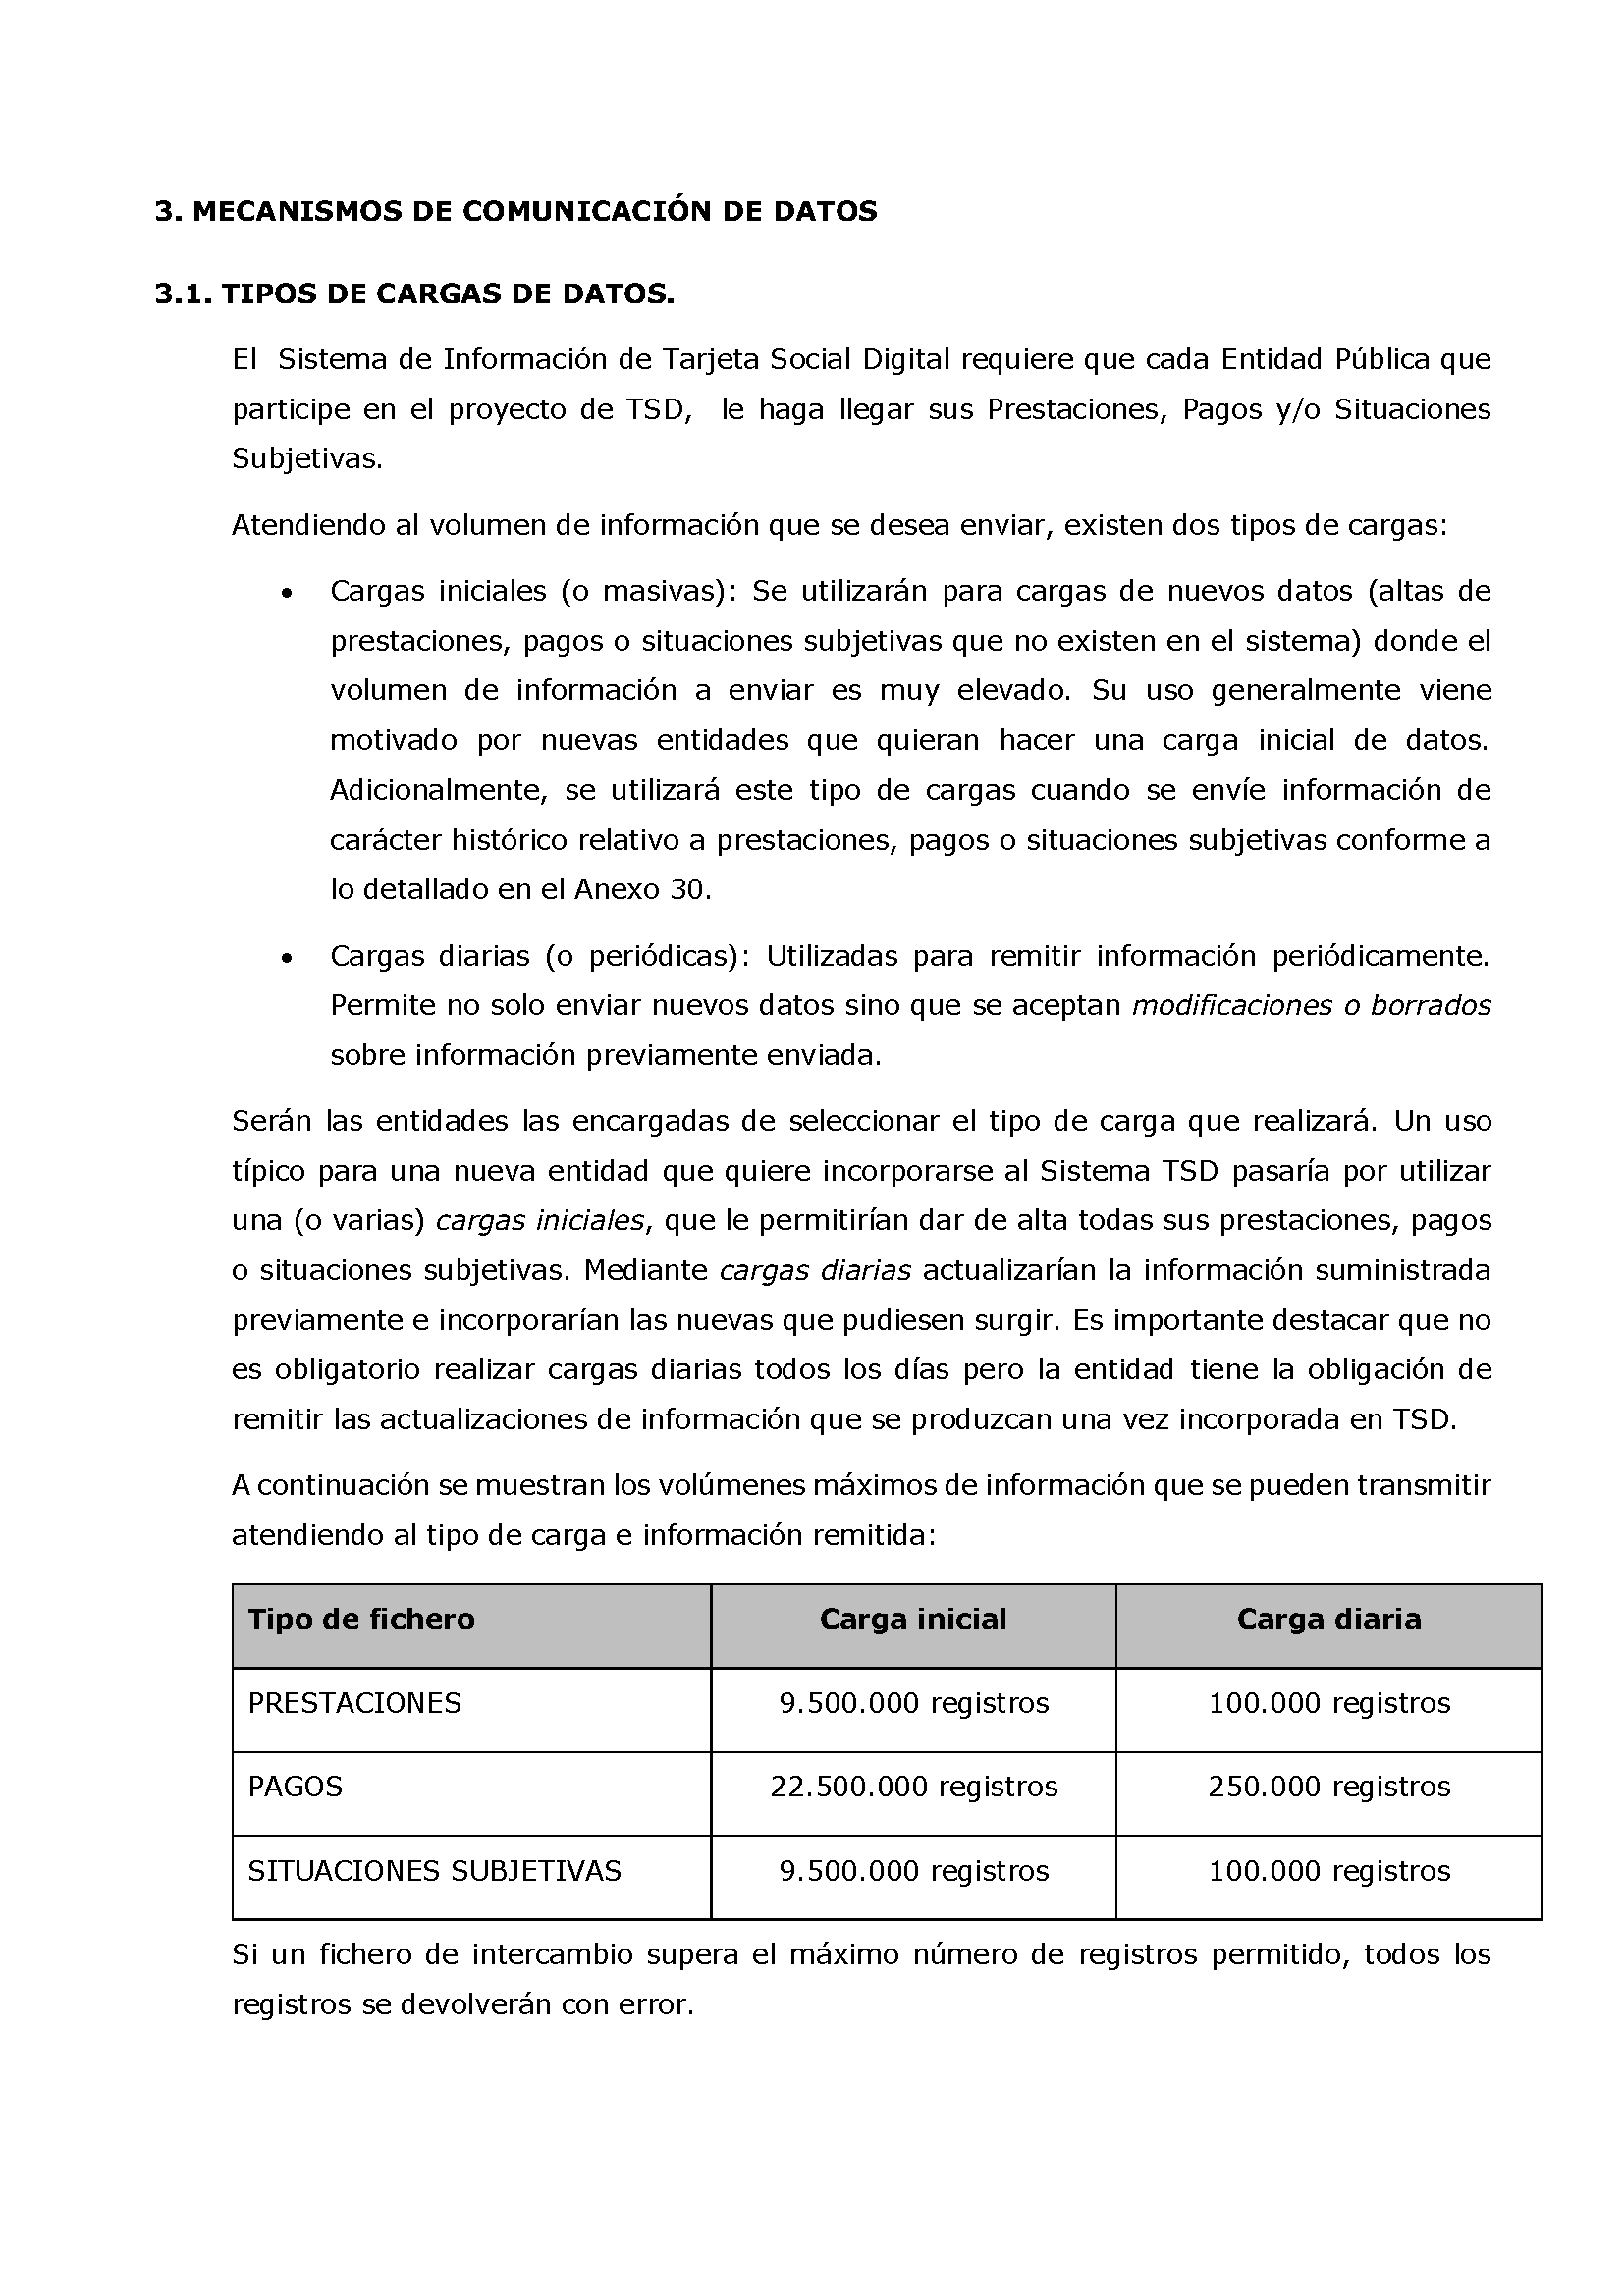 ANEXOS PROTOCOLO DE INTERCAMBIO DE FICHEROS PARA LA CARGA DE DATOS EN TARJETA SOCIAL DIGITAL Pag 14